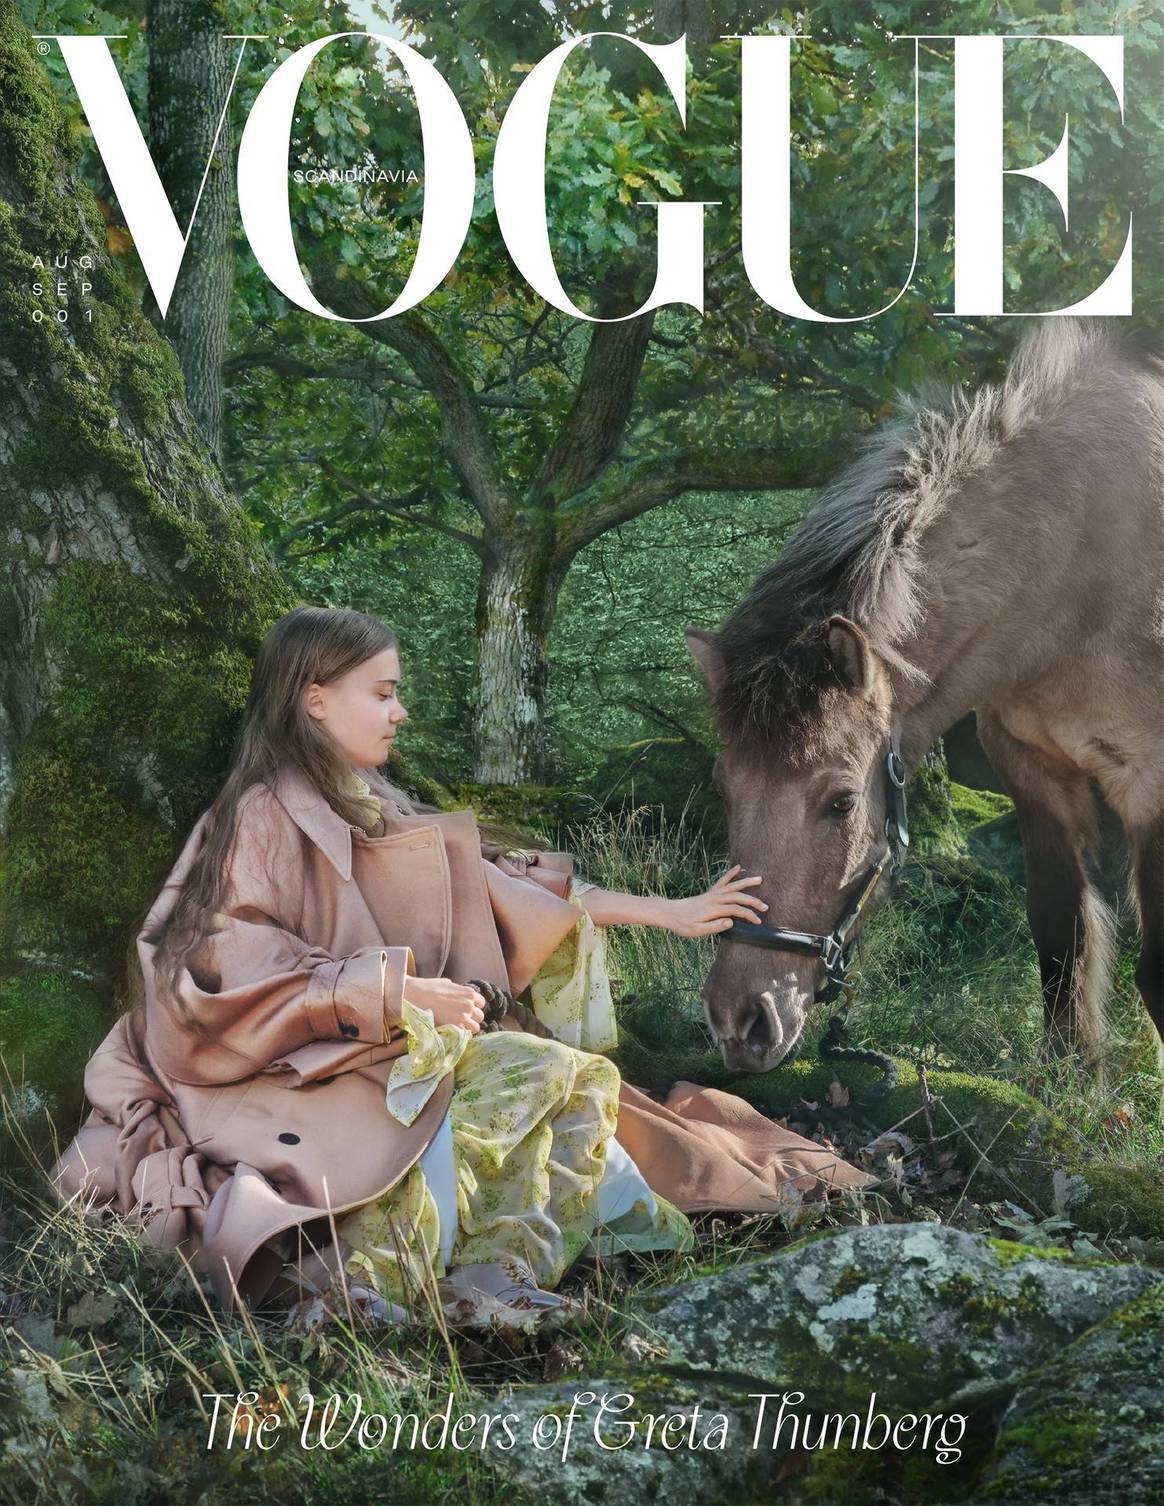 Vogue Scandinavia